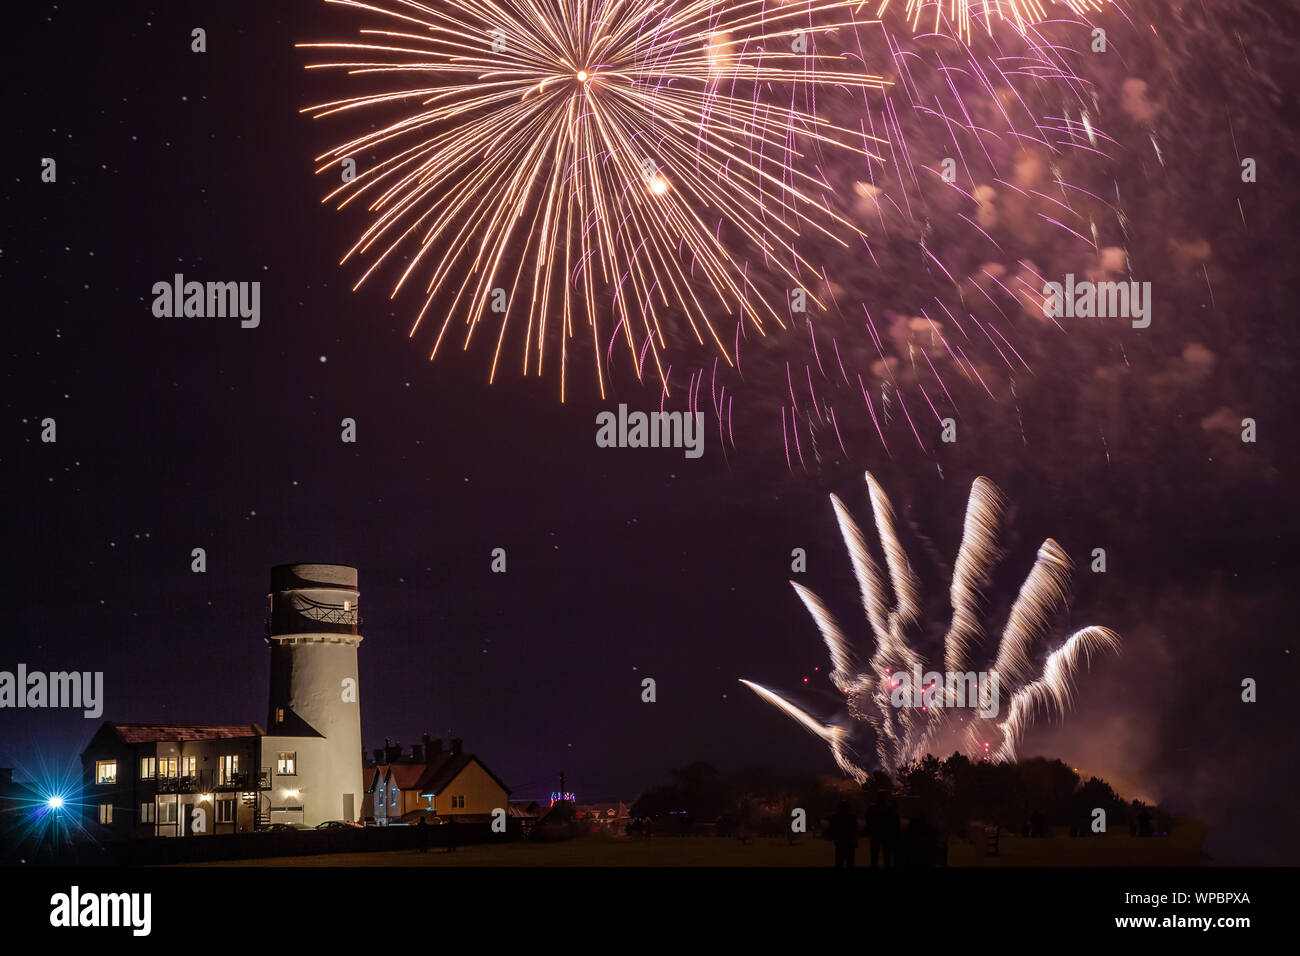 Feier Feuerwerk in Norfolk UK auf guyfawkes Nacht. Schöne Pyrotechnik Explosion über Leuchtturm Stockfoto